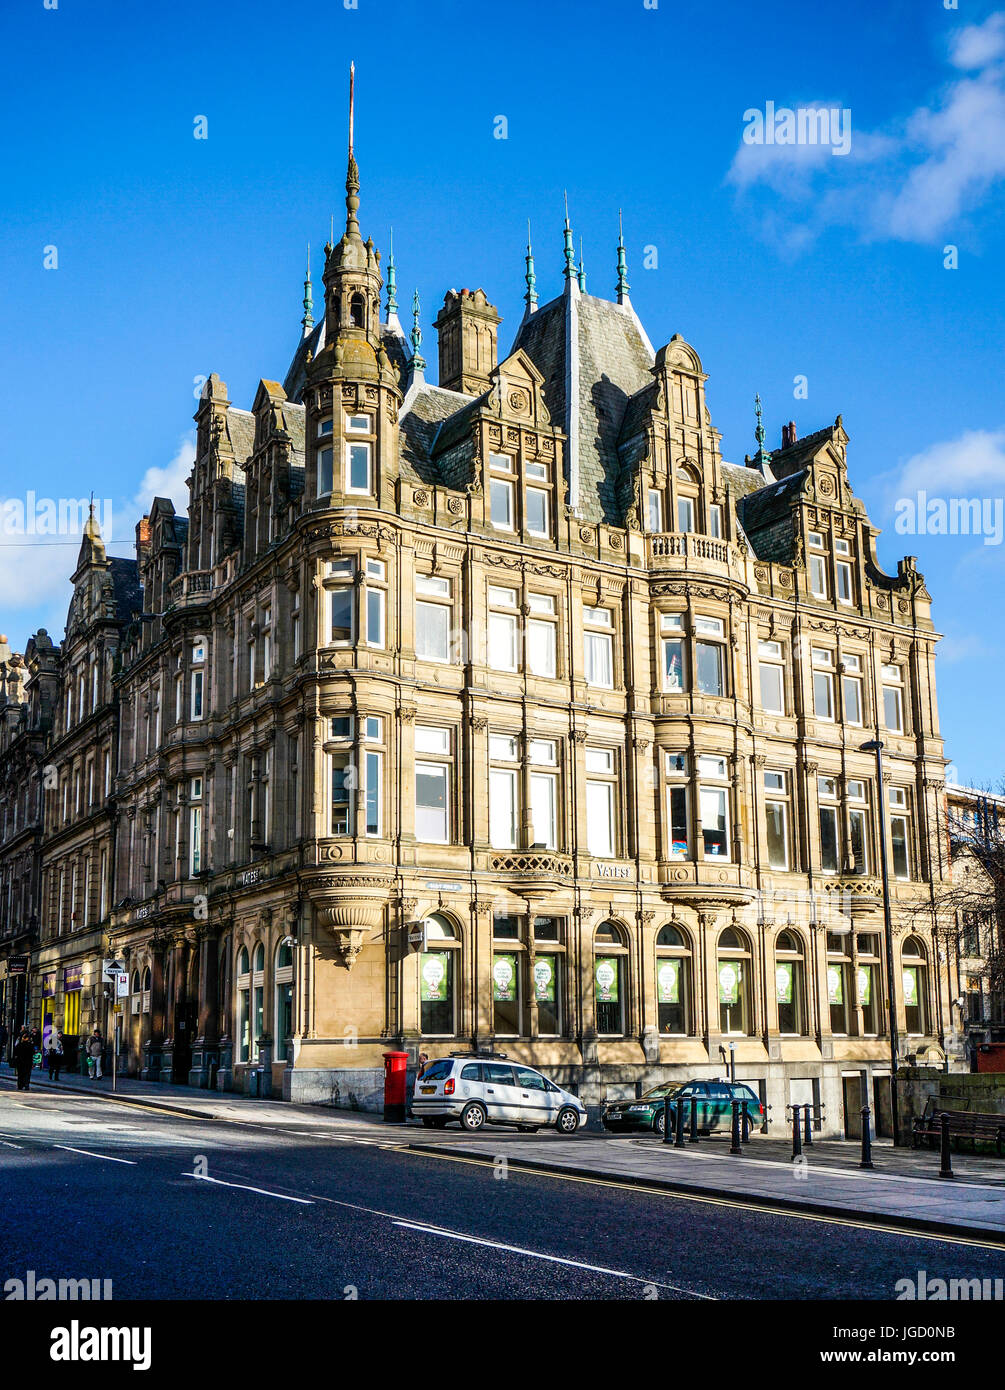 Imposante Gebäude in warmen Winter Sonnenlicht gebadet, an der Ecke der Grainger Street, City Centre, Newcastle upon Tyne, Tyne und Wear, England, UK. Stockfoto